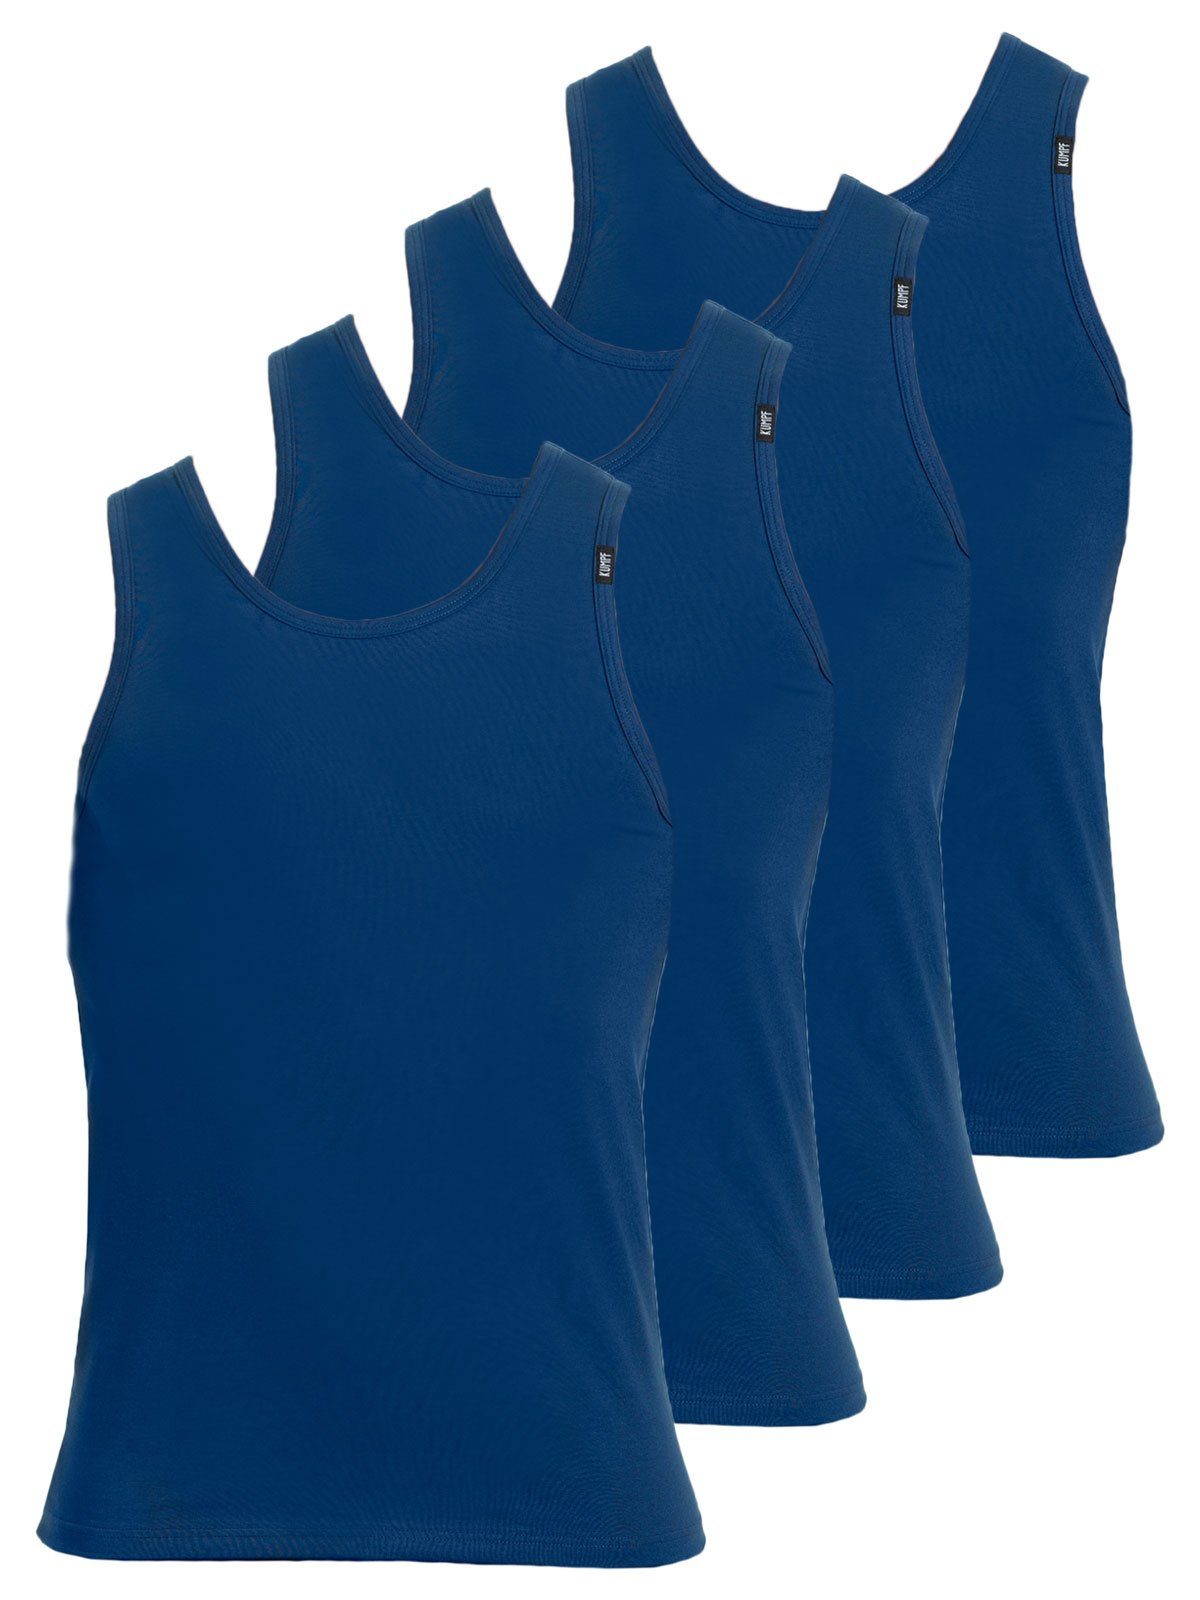 KUMPF Achselhemd 4er Sparpack Herren Unterhemd Bio Cotton (Spar-Set, 4-St) hohe Markenqualität darkblue